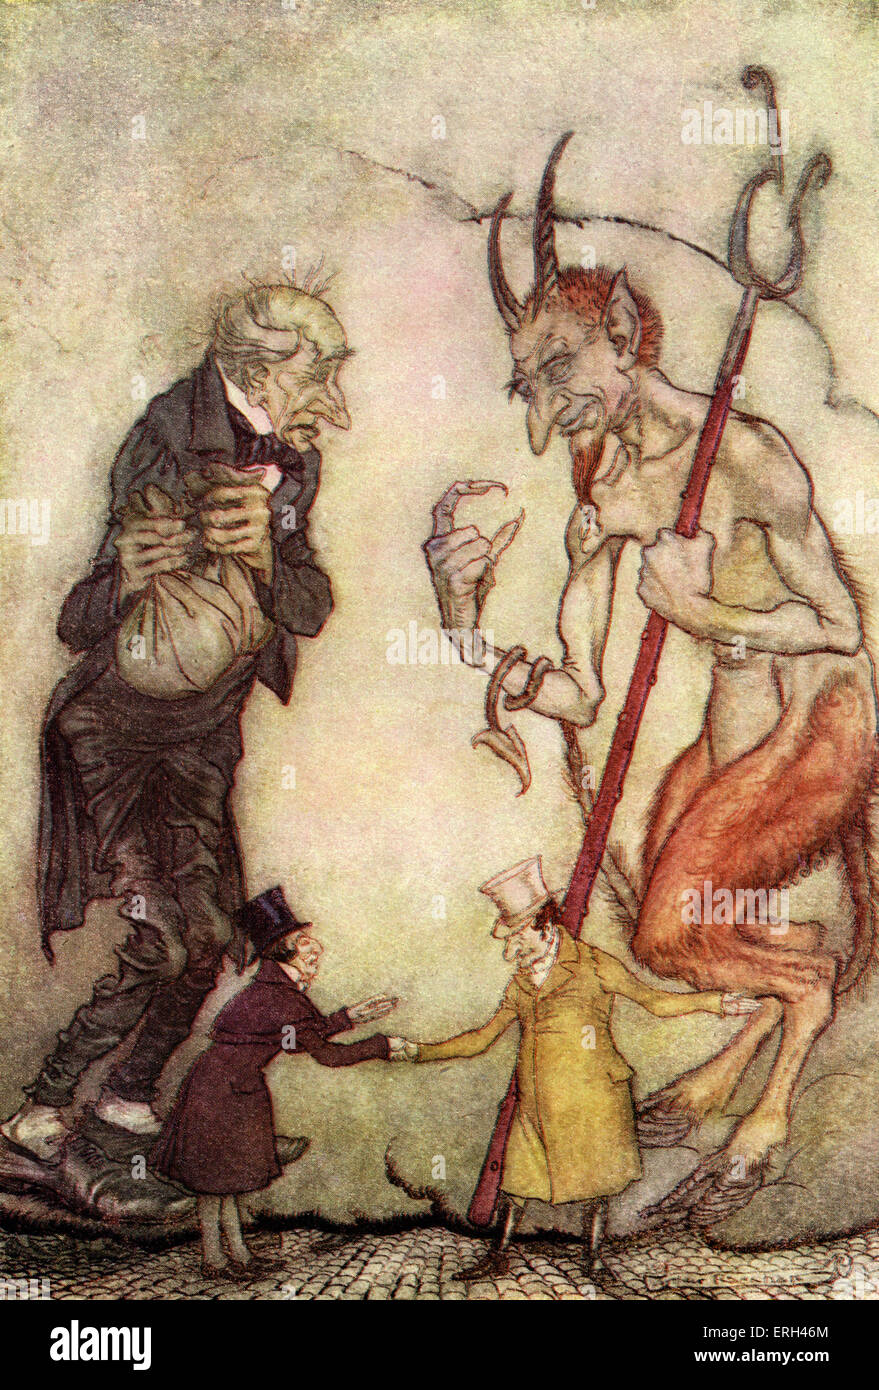 Charles Dickens, "A Christmas Carol". Scrooge avec le troisième esprit - le fantôme du Noël futur. Illustration par Arthur Banque D'Images